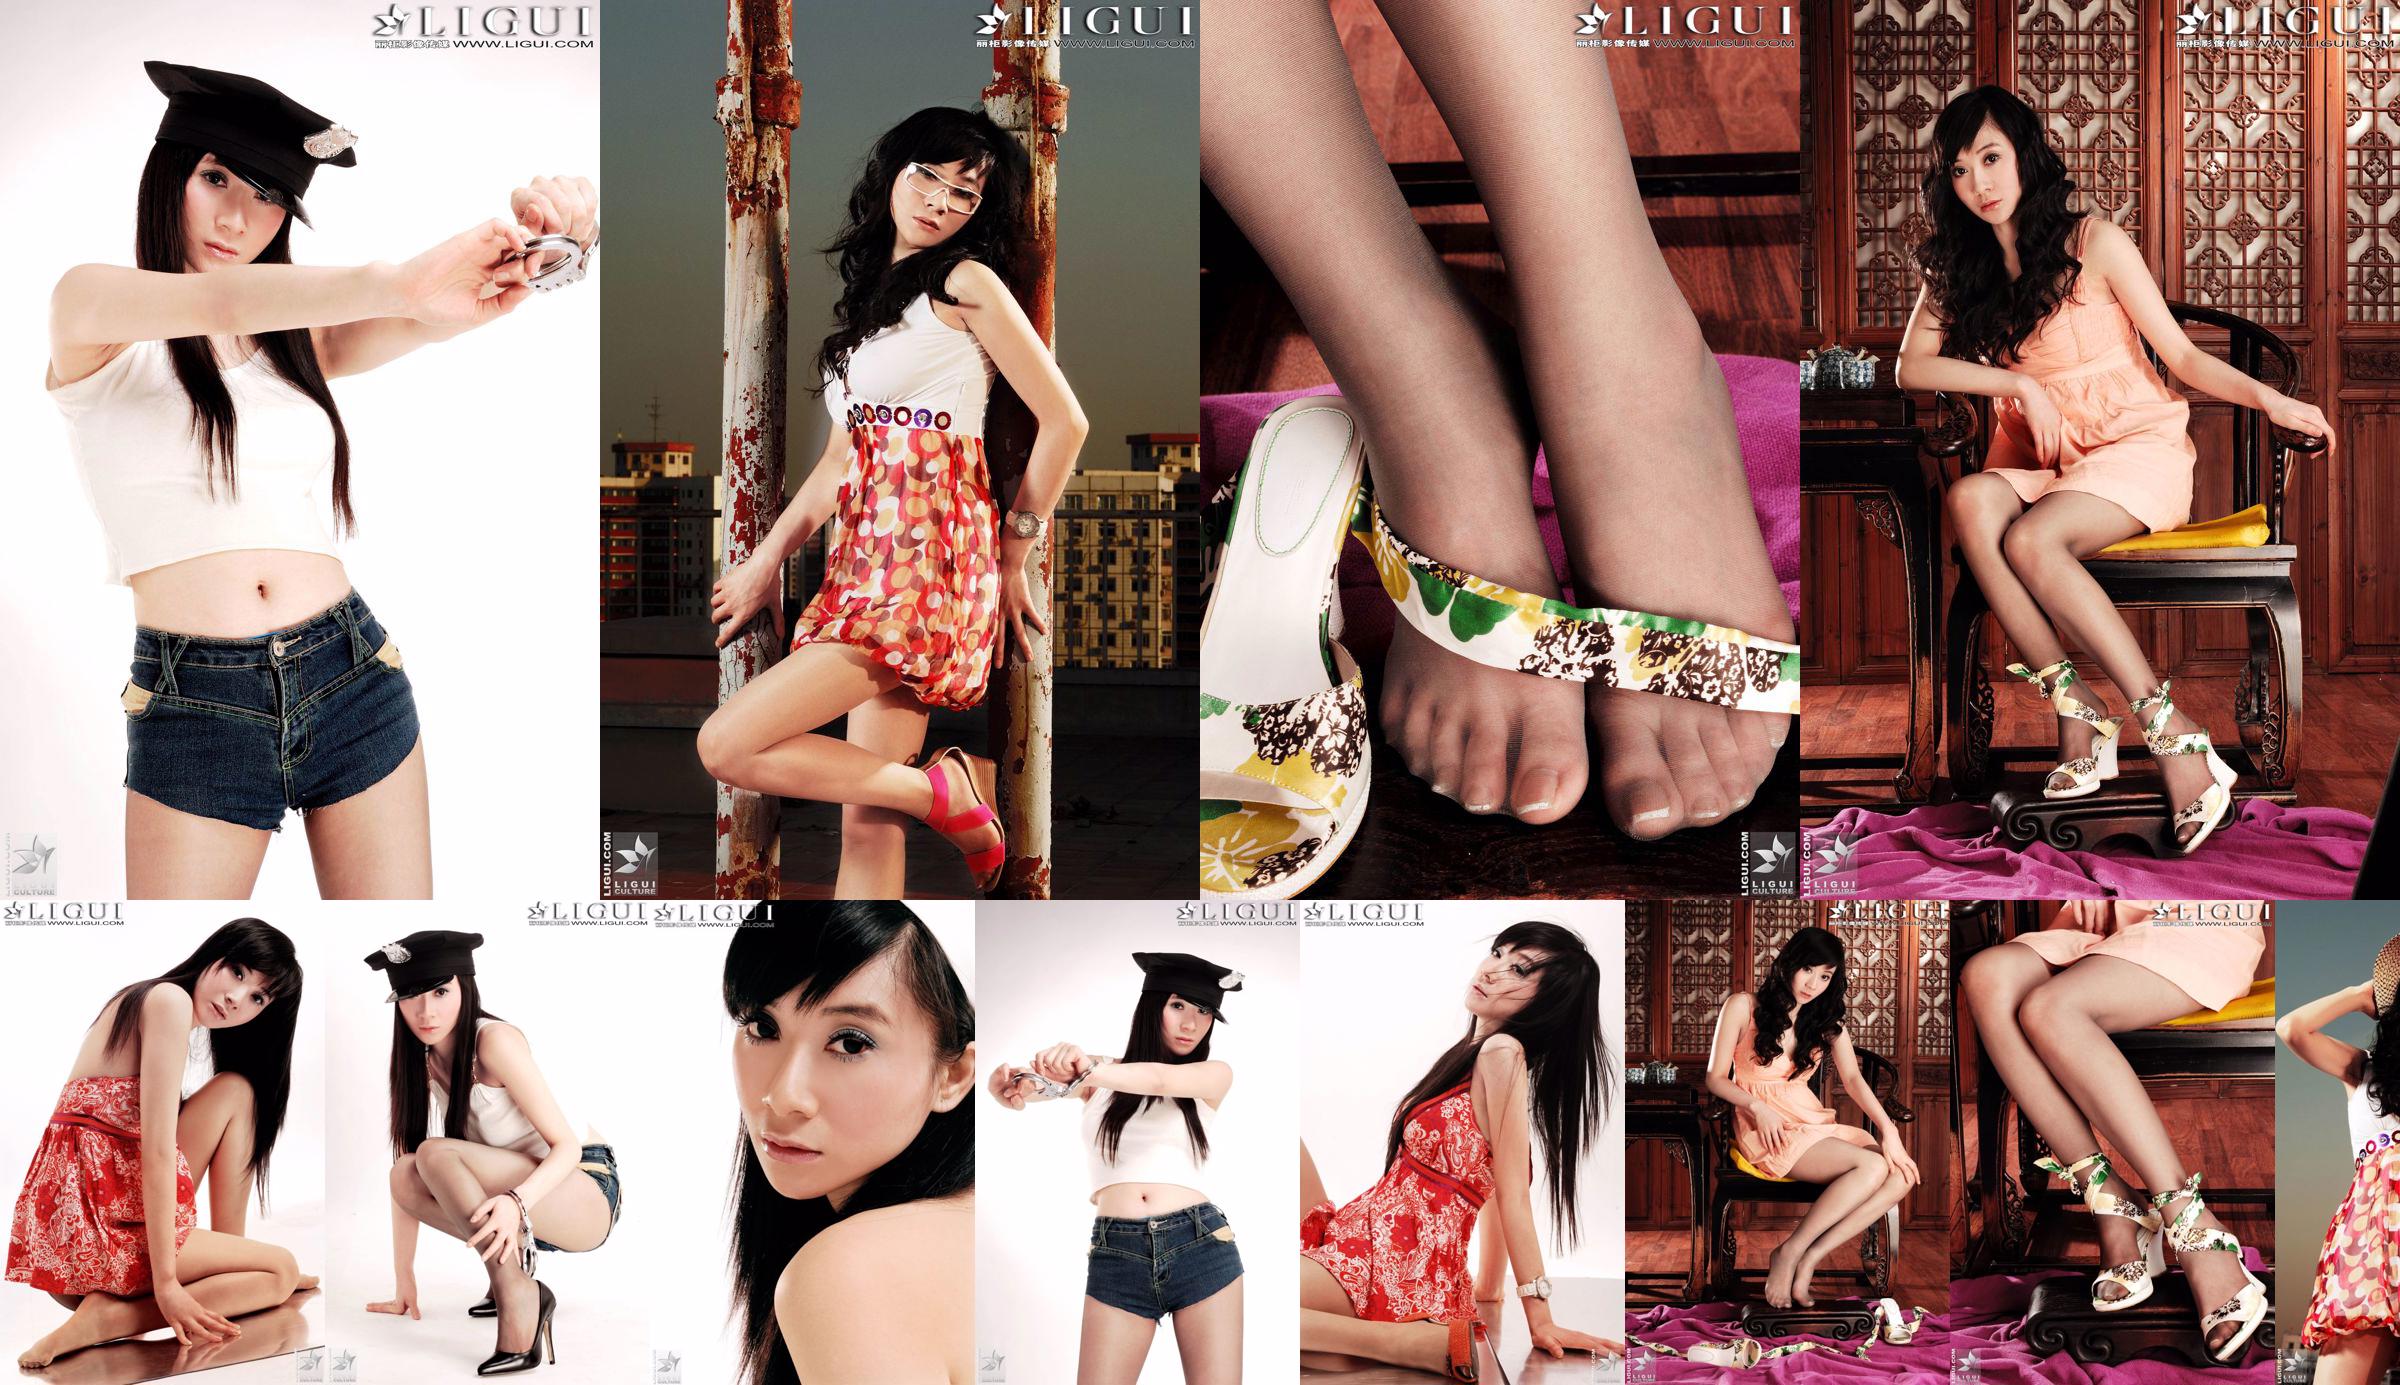 [丽 柜 LiGui] Model Jinxin Silky Foot and Beautiful Legs Photo Picture No.c8d1c9 Strona 1